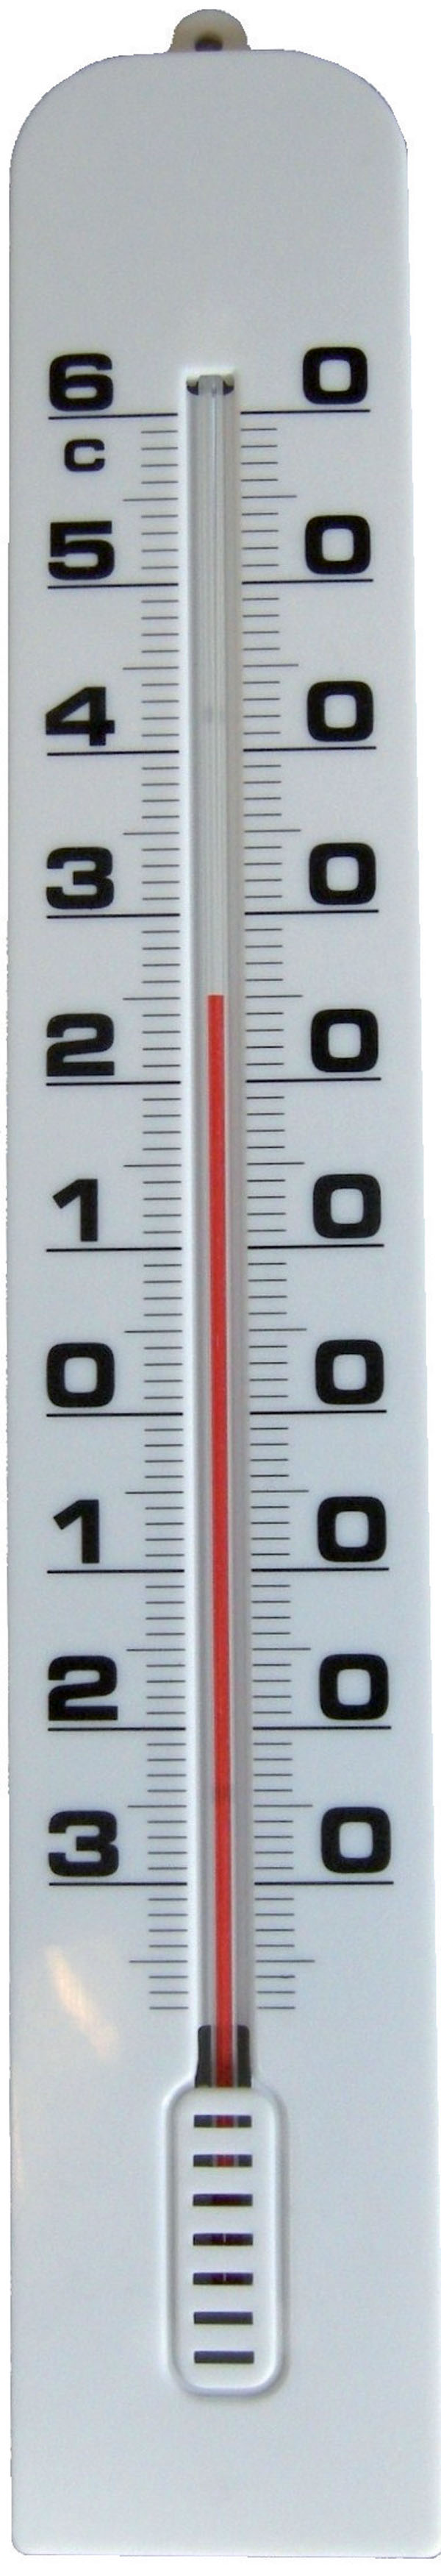 Thermomètre mécanique à alcool - ABS - Format géant